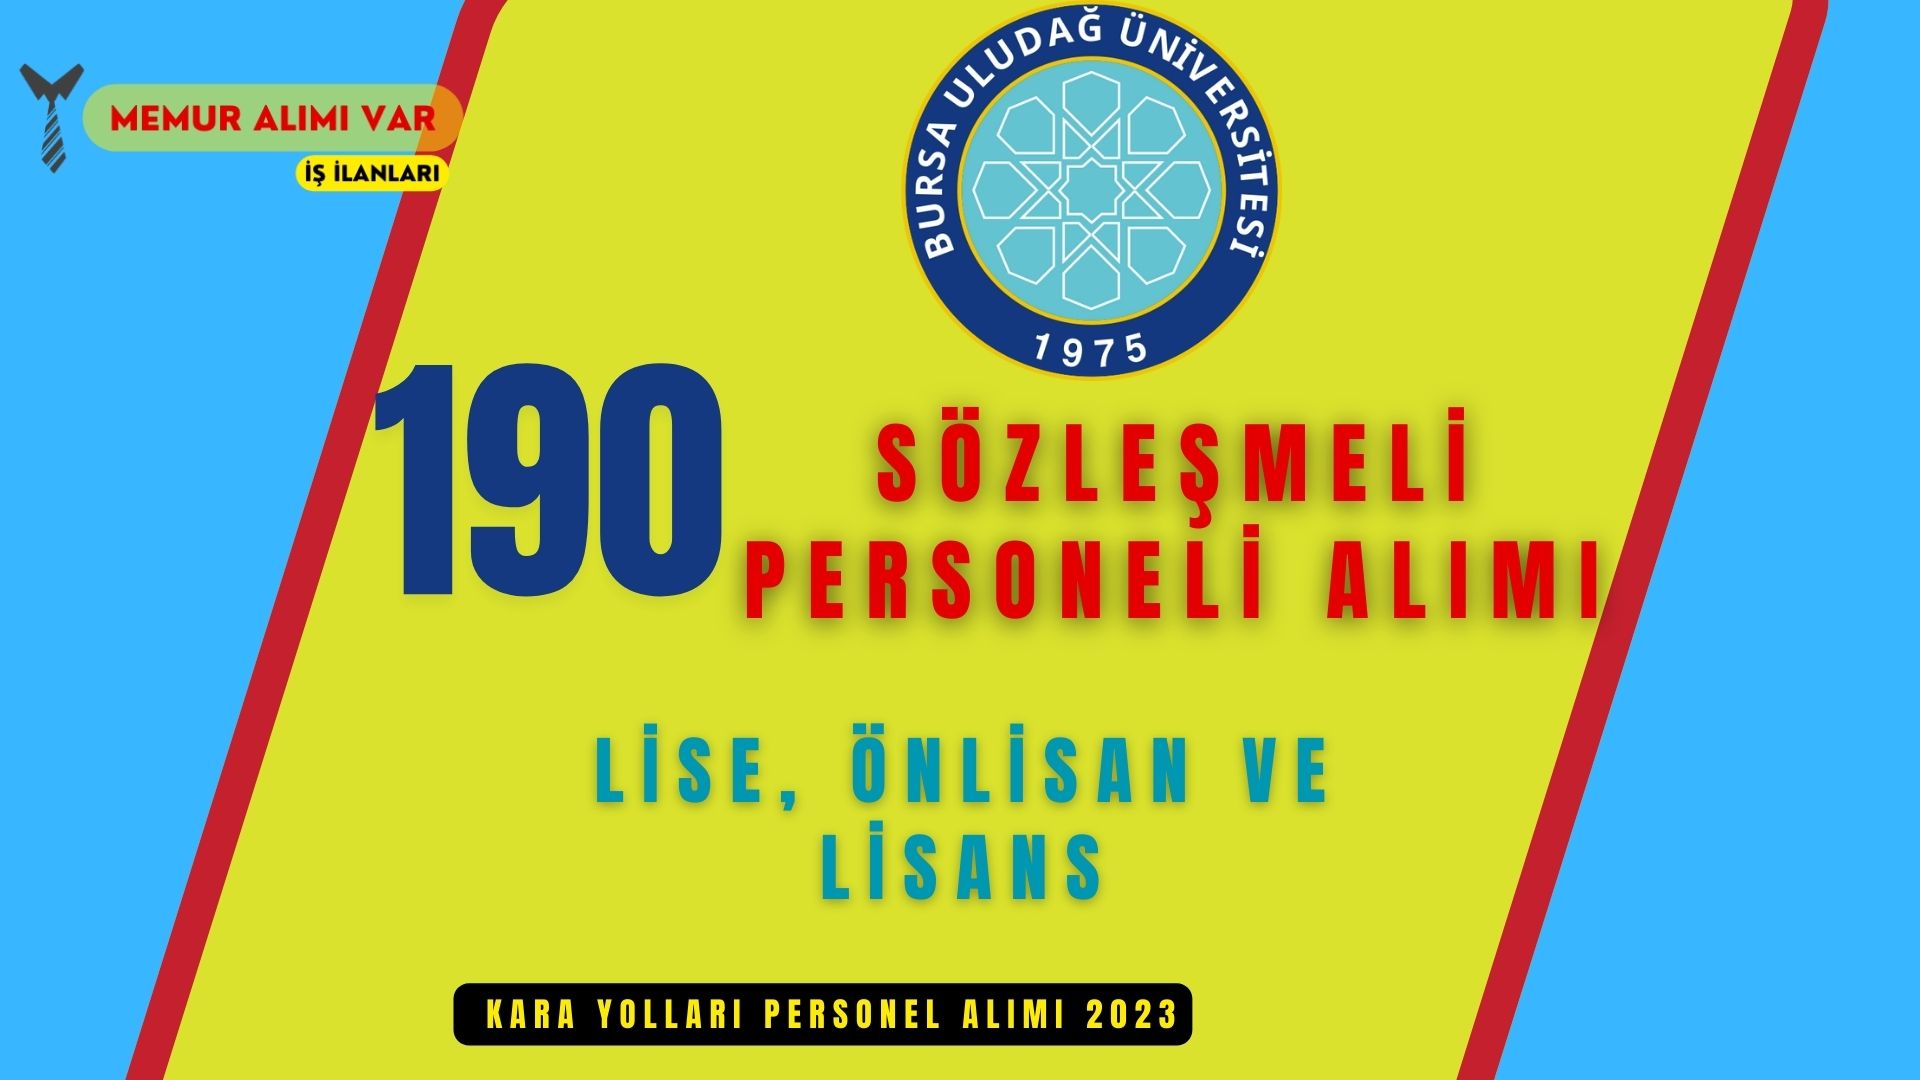 Bursa Uludağ Üniversitesi 190 Personel Alımı Lise, Ön Lisans ve Lisans